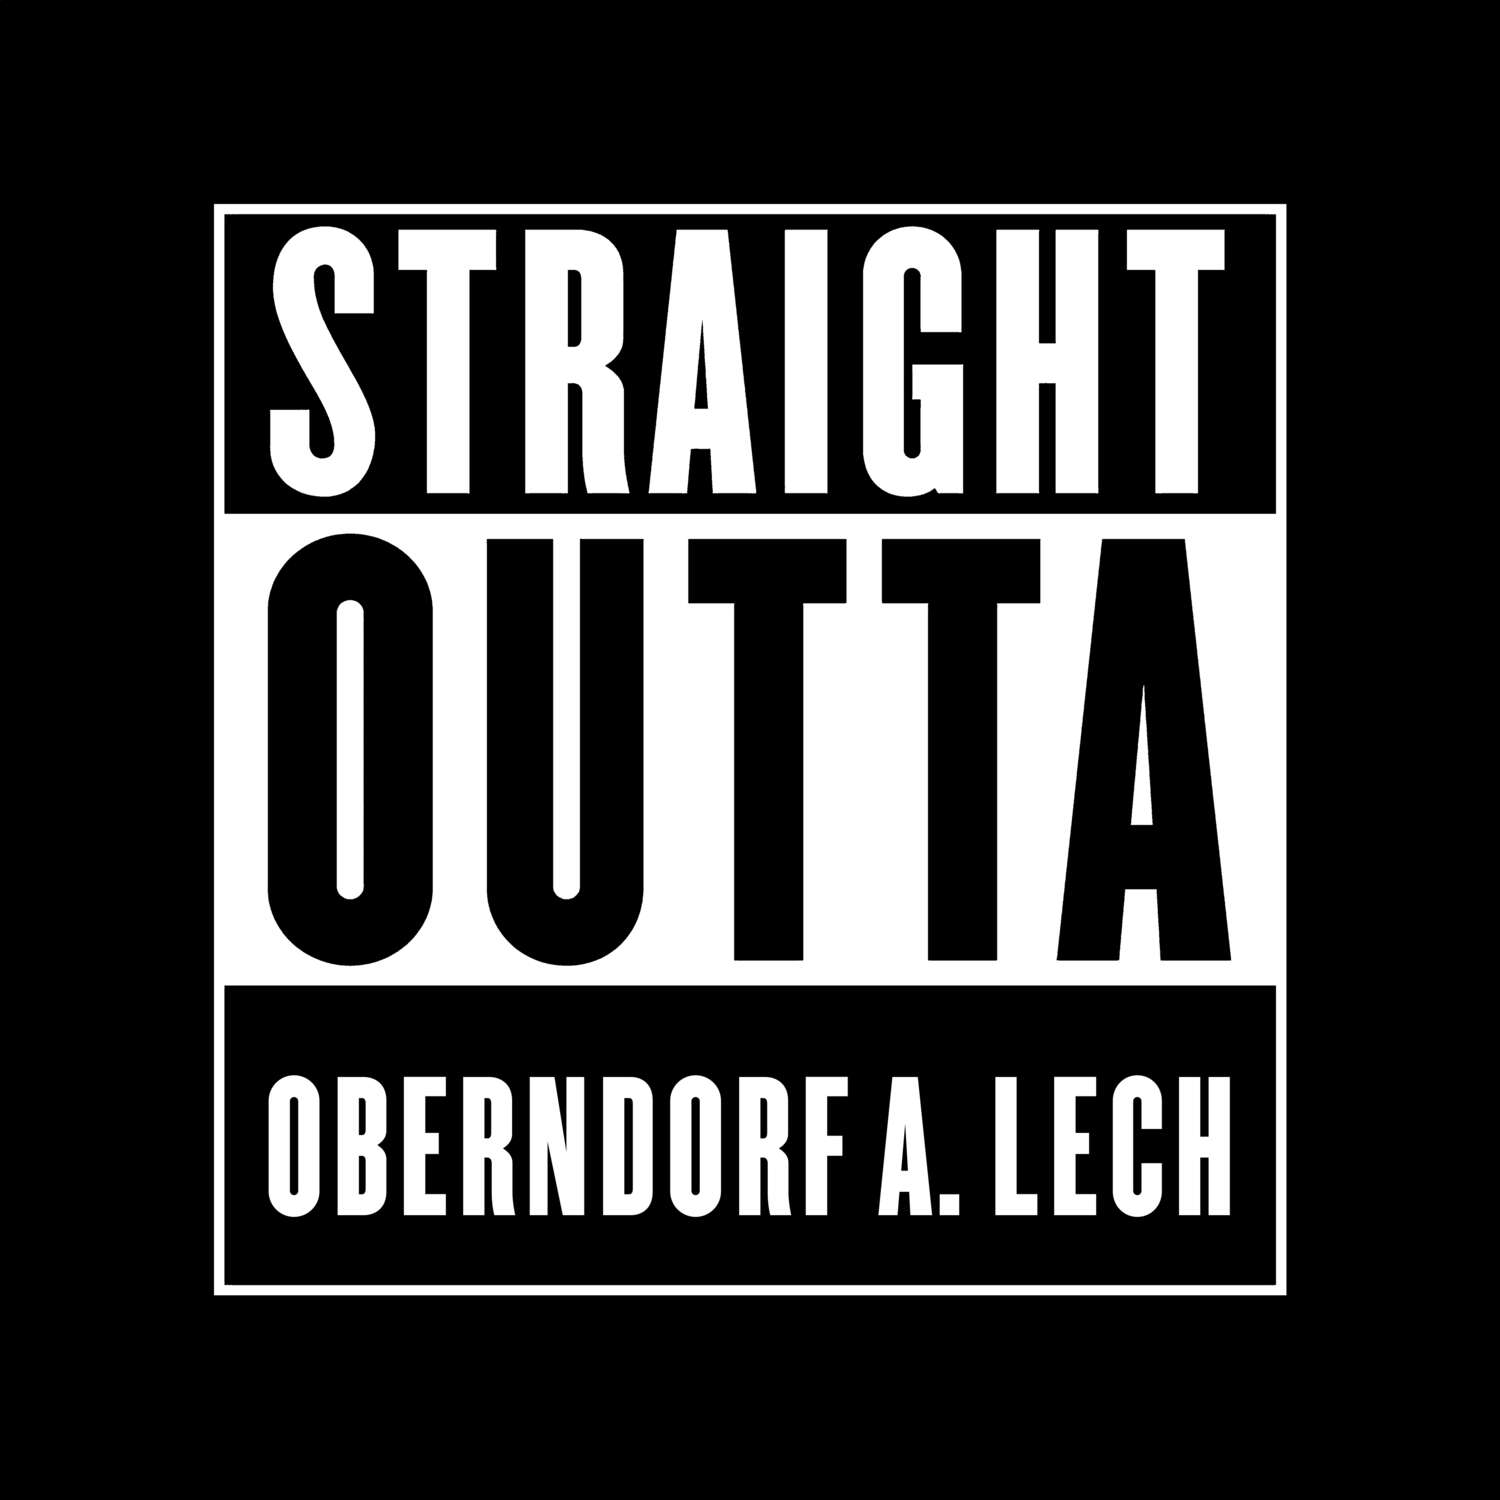 Oberndorf a. Lech T-Shirt »Straight Outta«